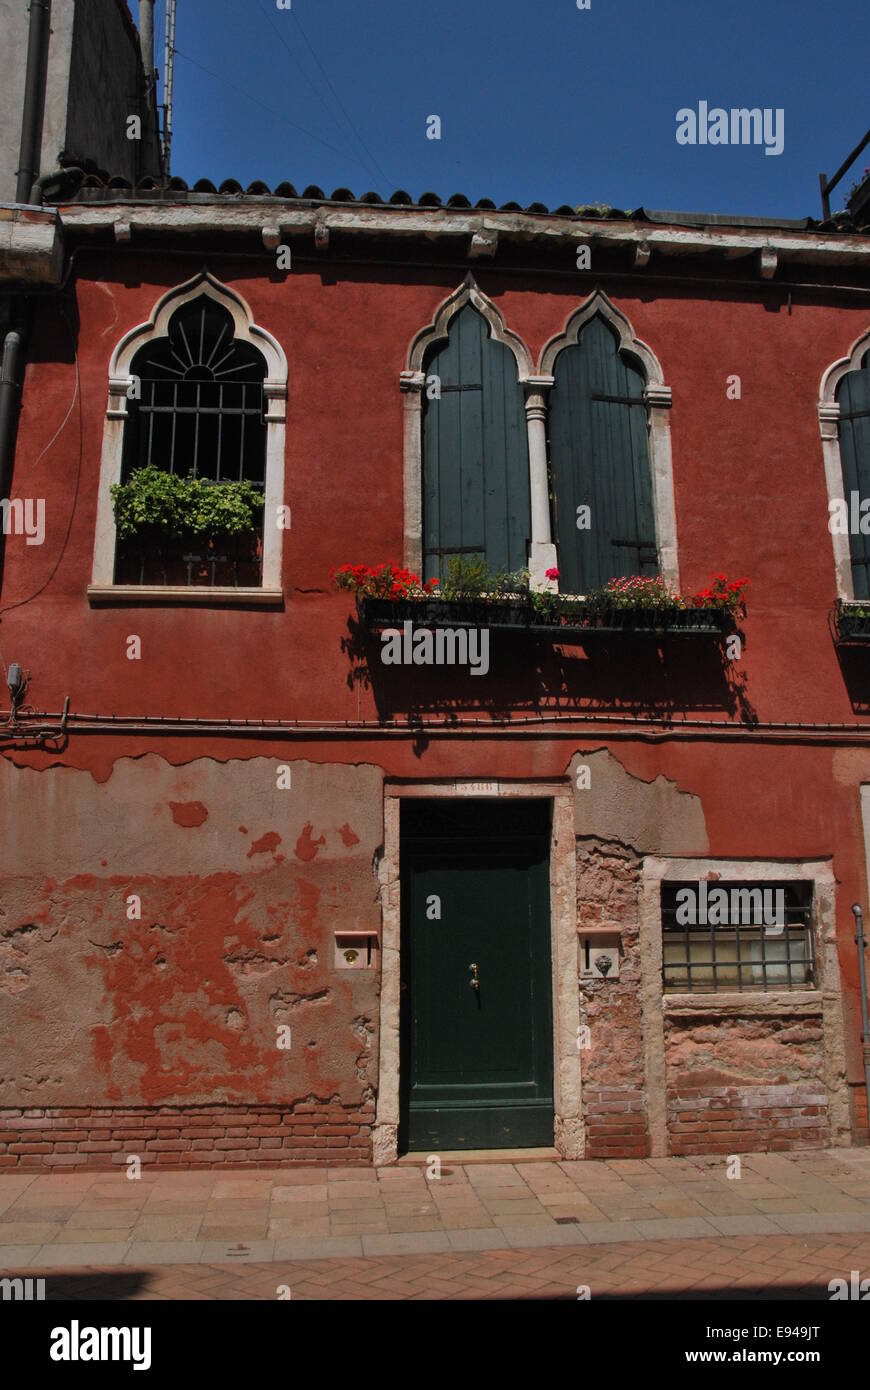 Italien. Venedig. Tür. rot gestrichene Wände. grüne Tür. Fenster-Box. Hof. Sonnenschein, dekorative Fenster Stockfoto